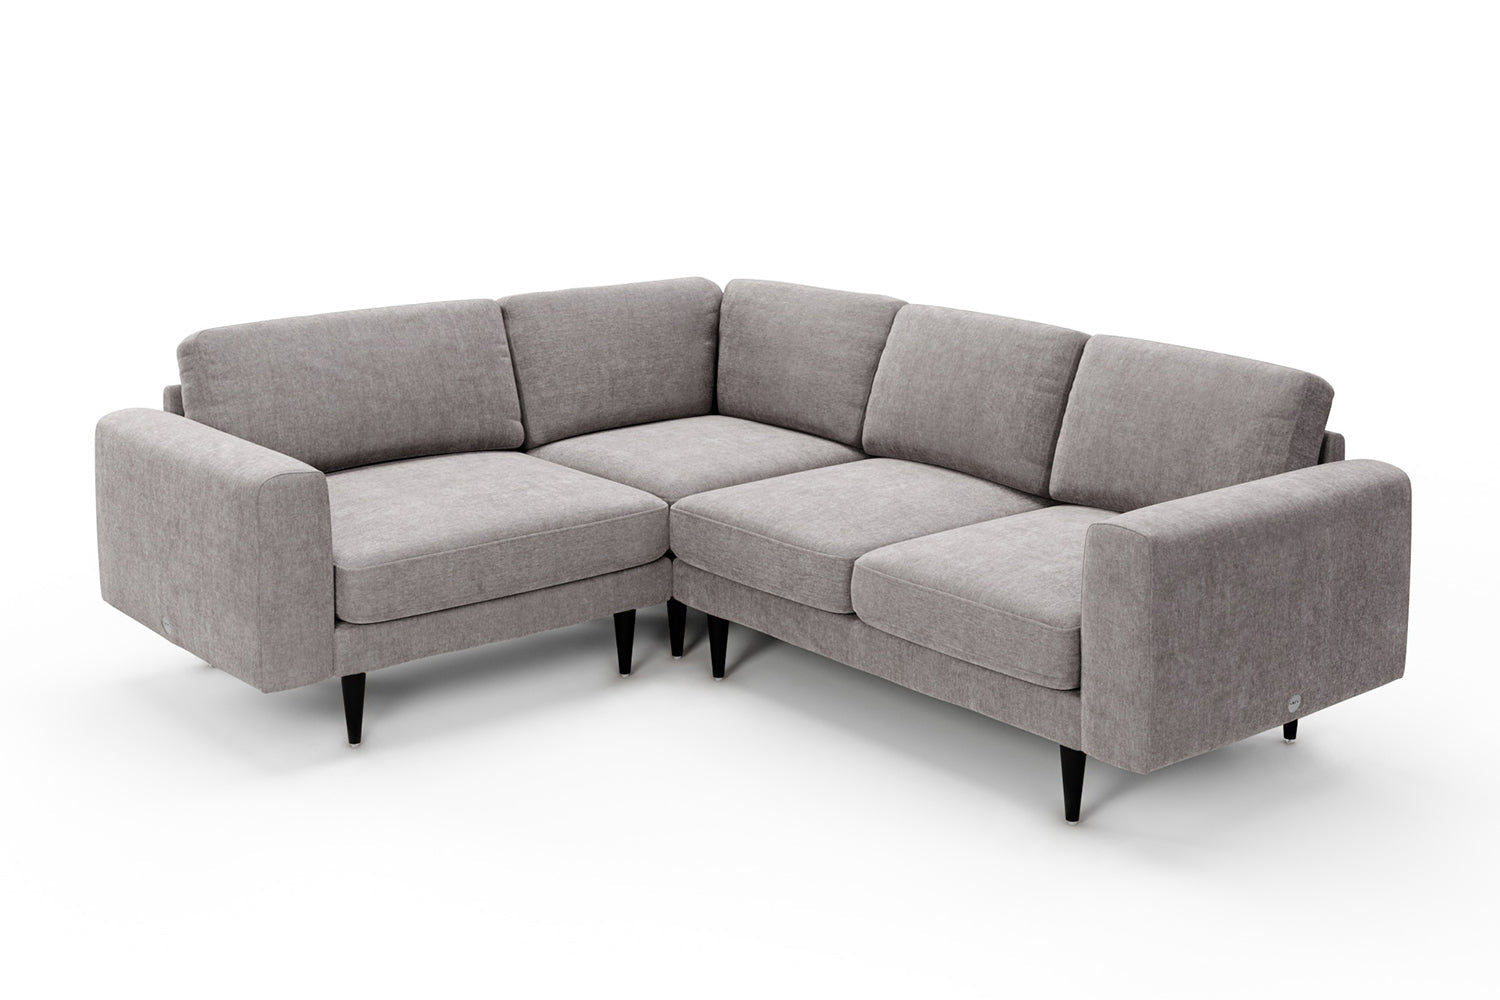 SNUG | The Big Chill Corner Sofa Small in Mid Grey